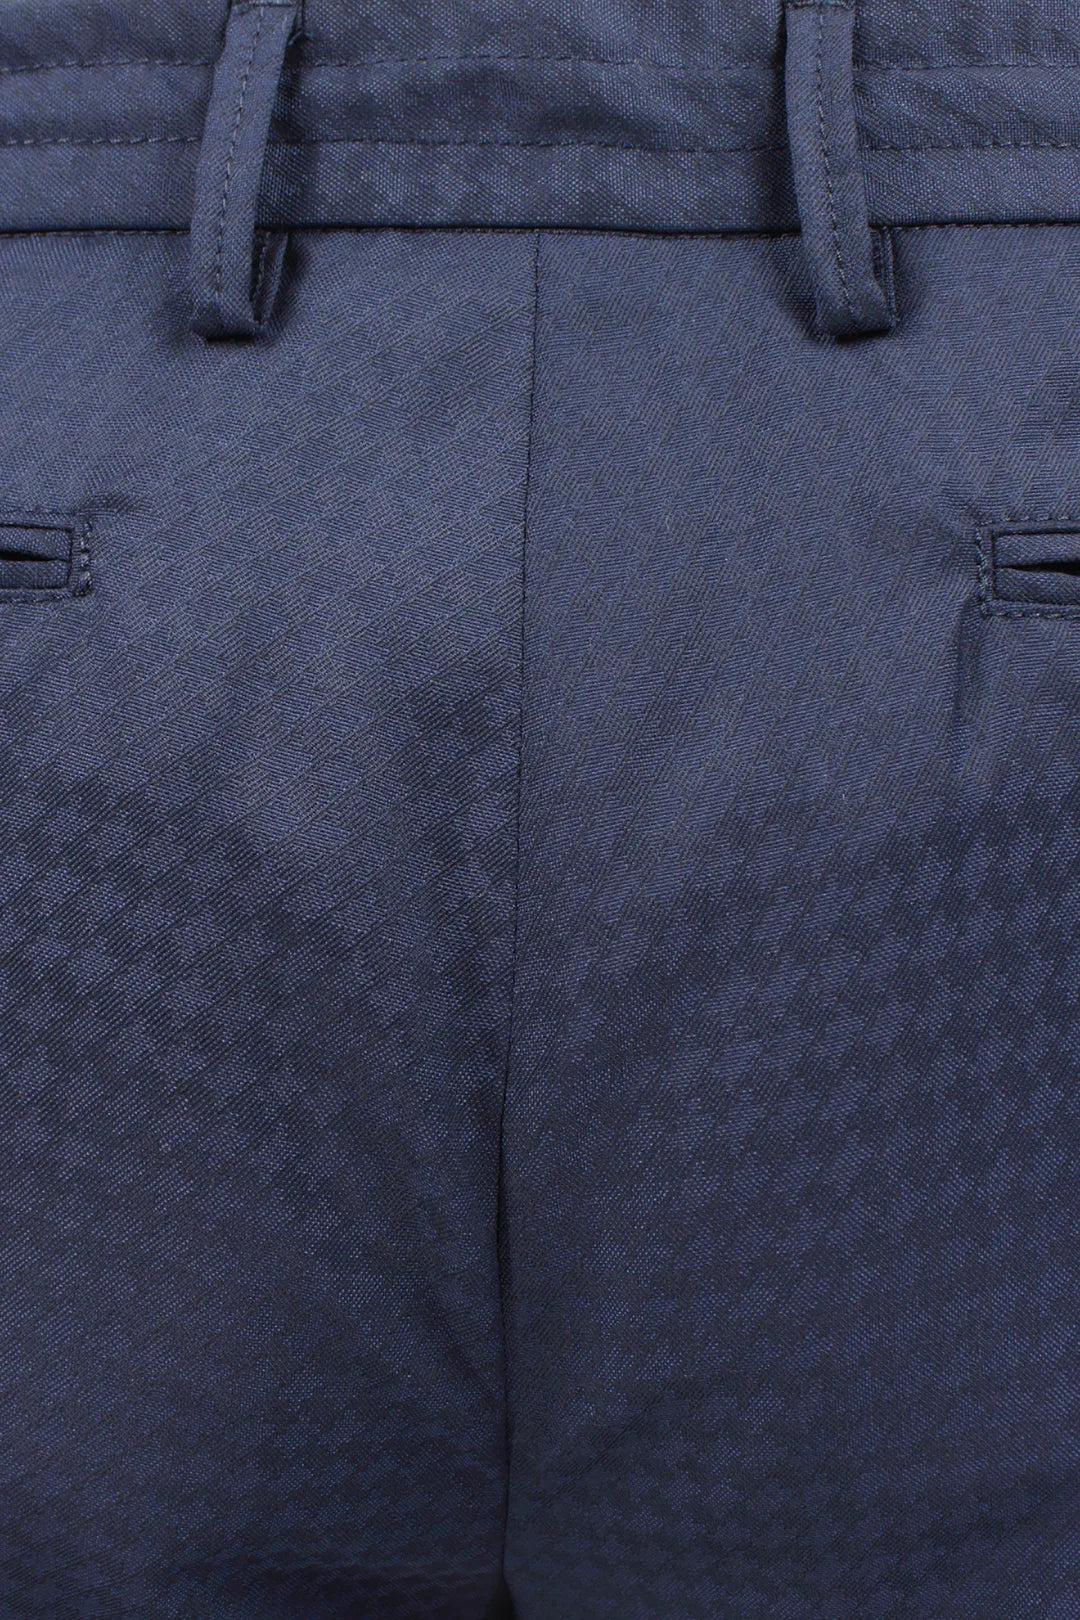 Pantalone pince coulisse lana pied de poule blu tessuto